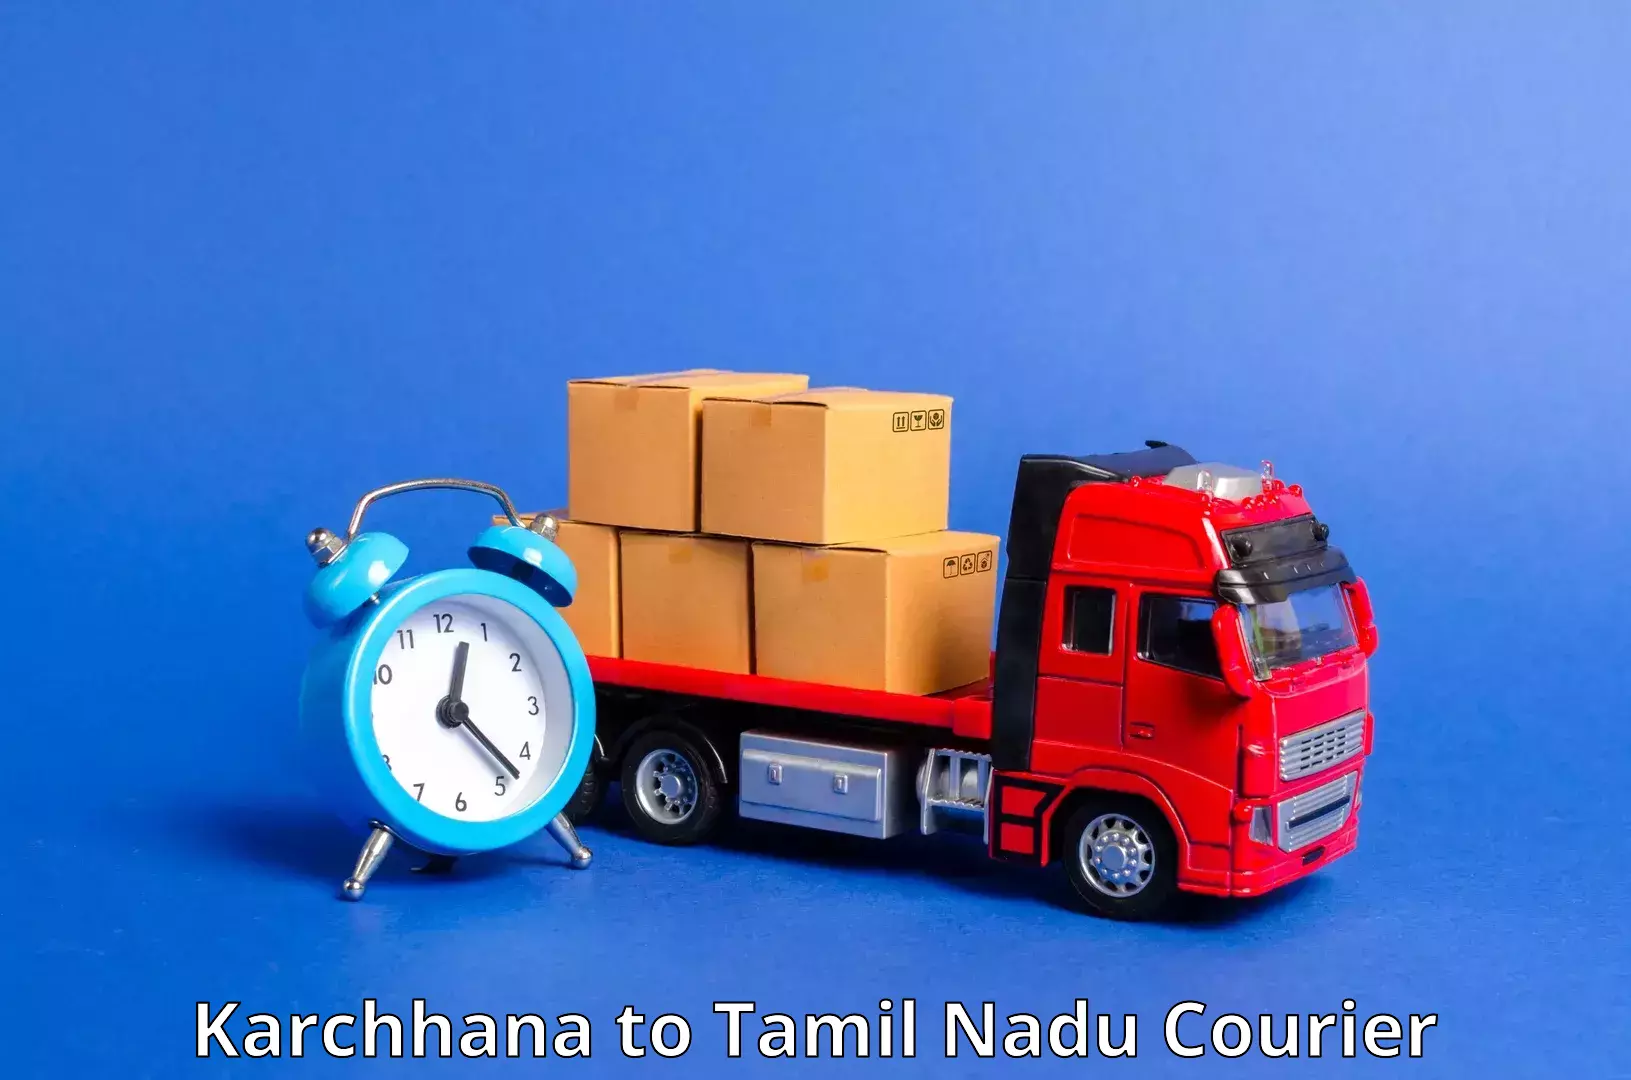 Competitive shipping rates Karchhana to Periyakulam